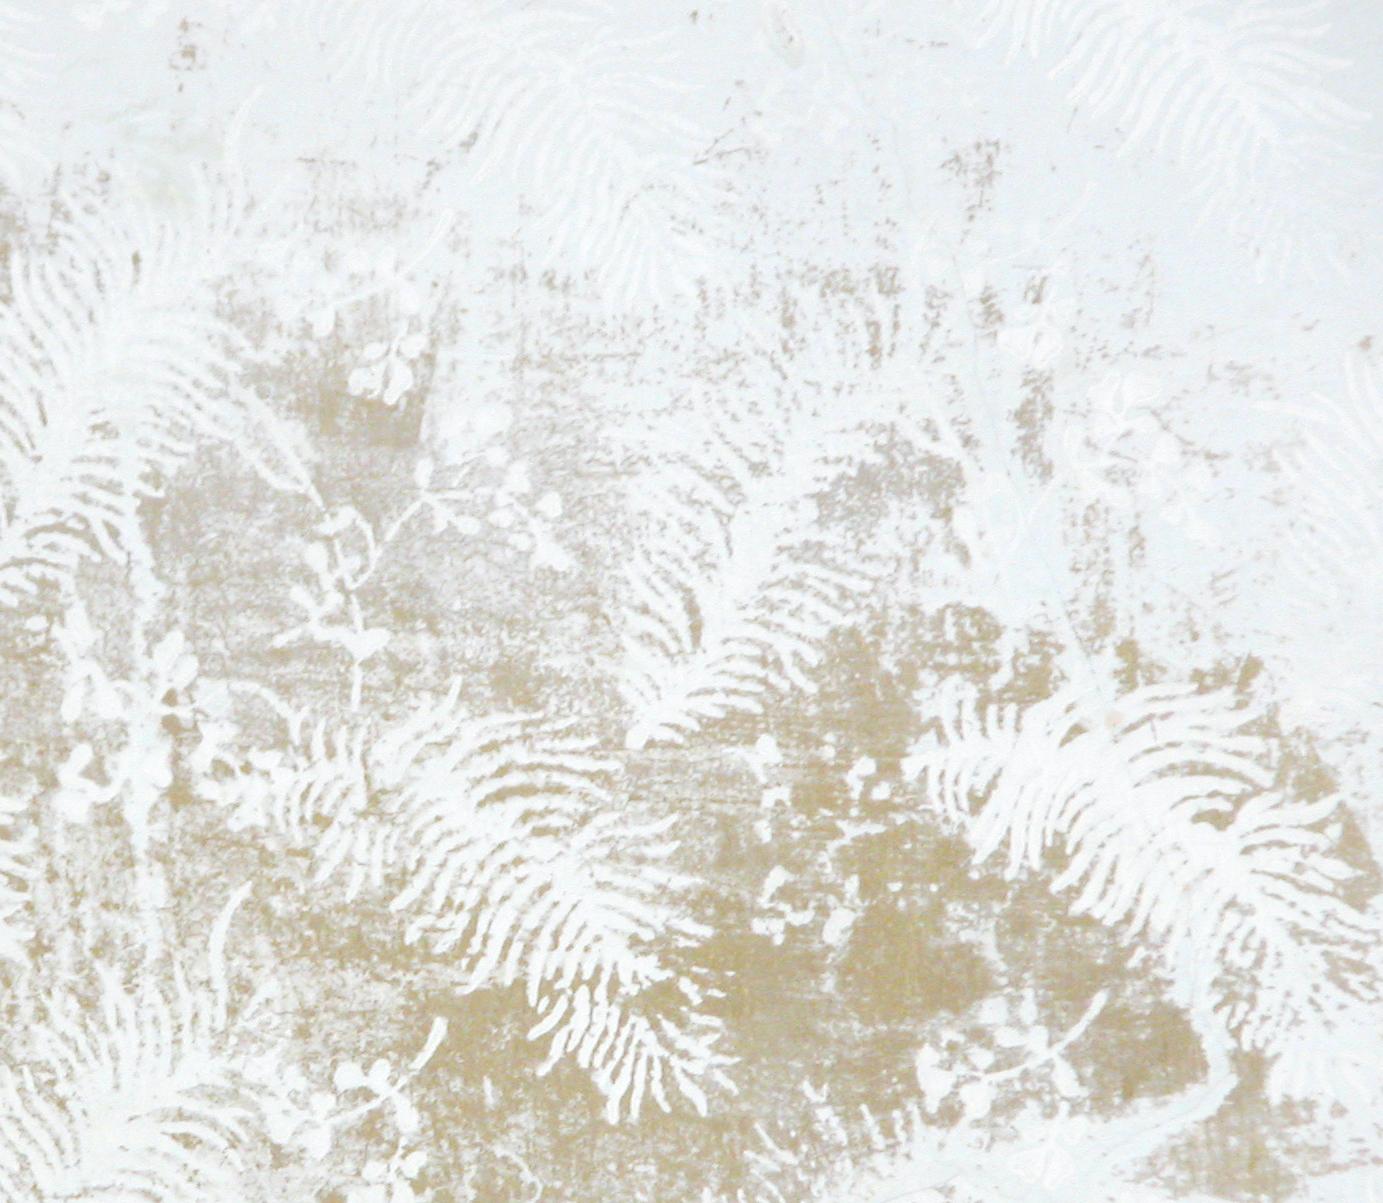 Michael Huey
Jardin, 2017
97 x 105,5 cm
Impression d'archives injekt sur papier aquarelle
Edition 4/5+II AP
Le Label sera expédié avec une étiquette adhésive signée par l'artiste.

Michael Huey est né en 1964 à Traverse City, aux États-Unis, et vit